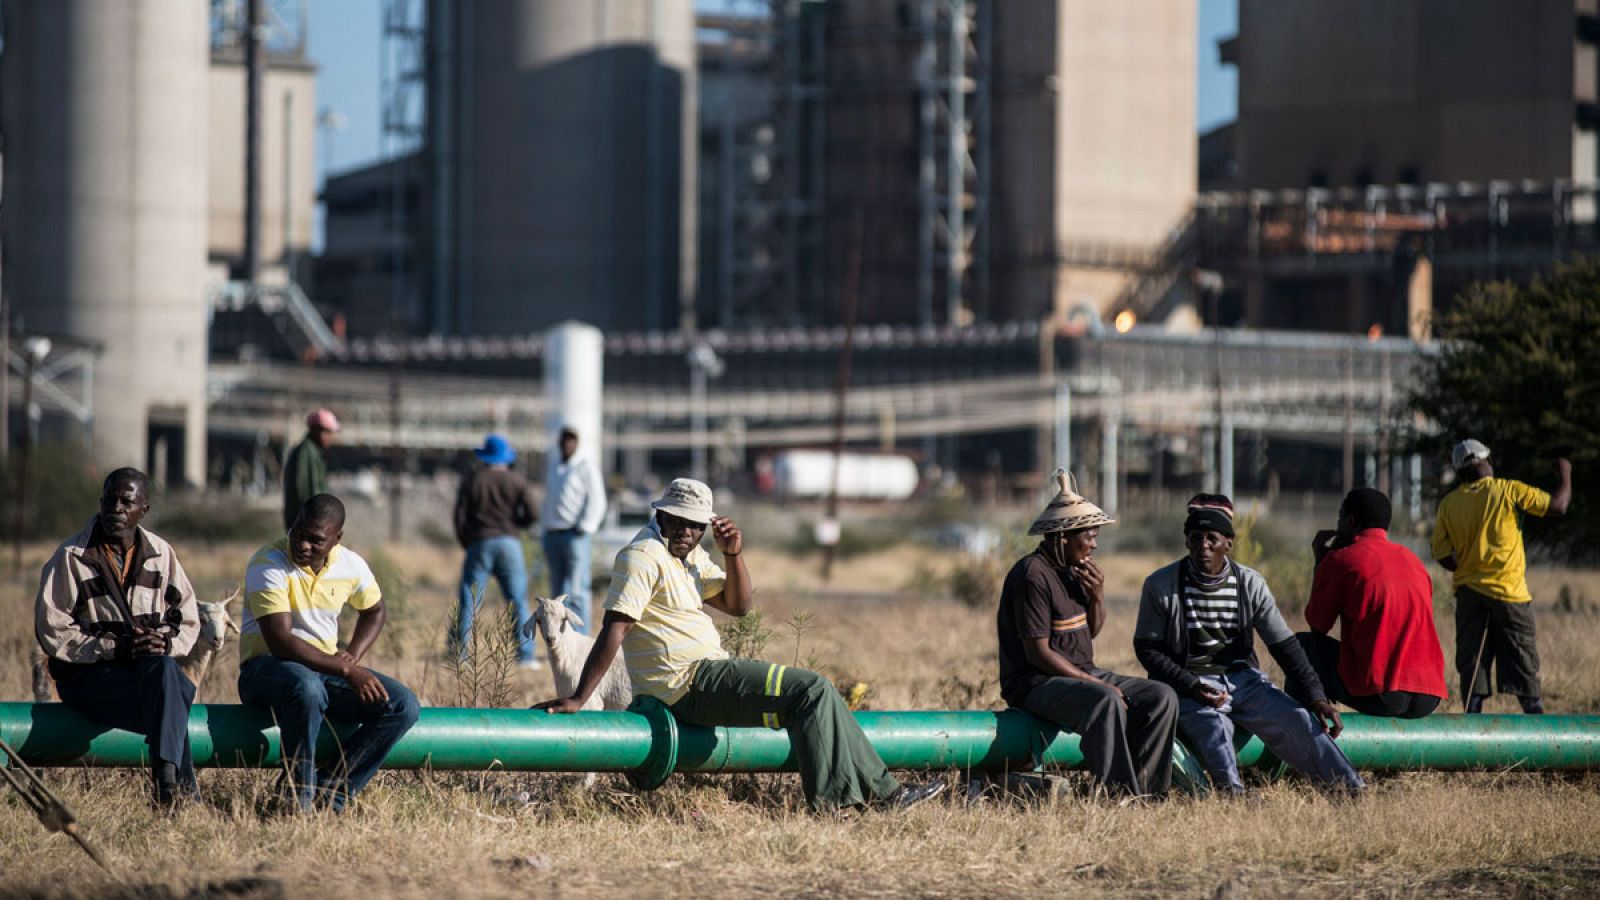 Imagen tomada durante la huelga de mineros sudafricanos de 2012.